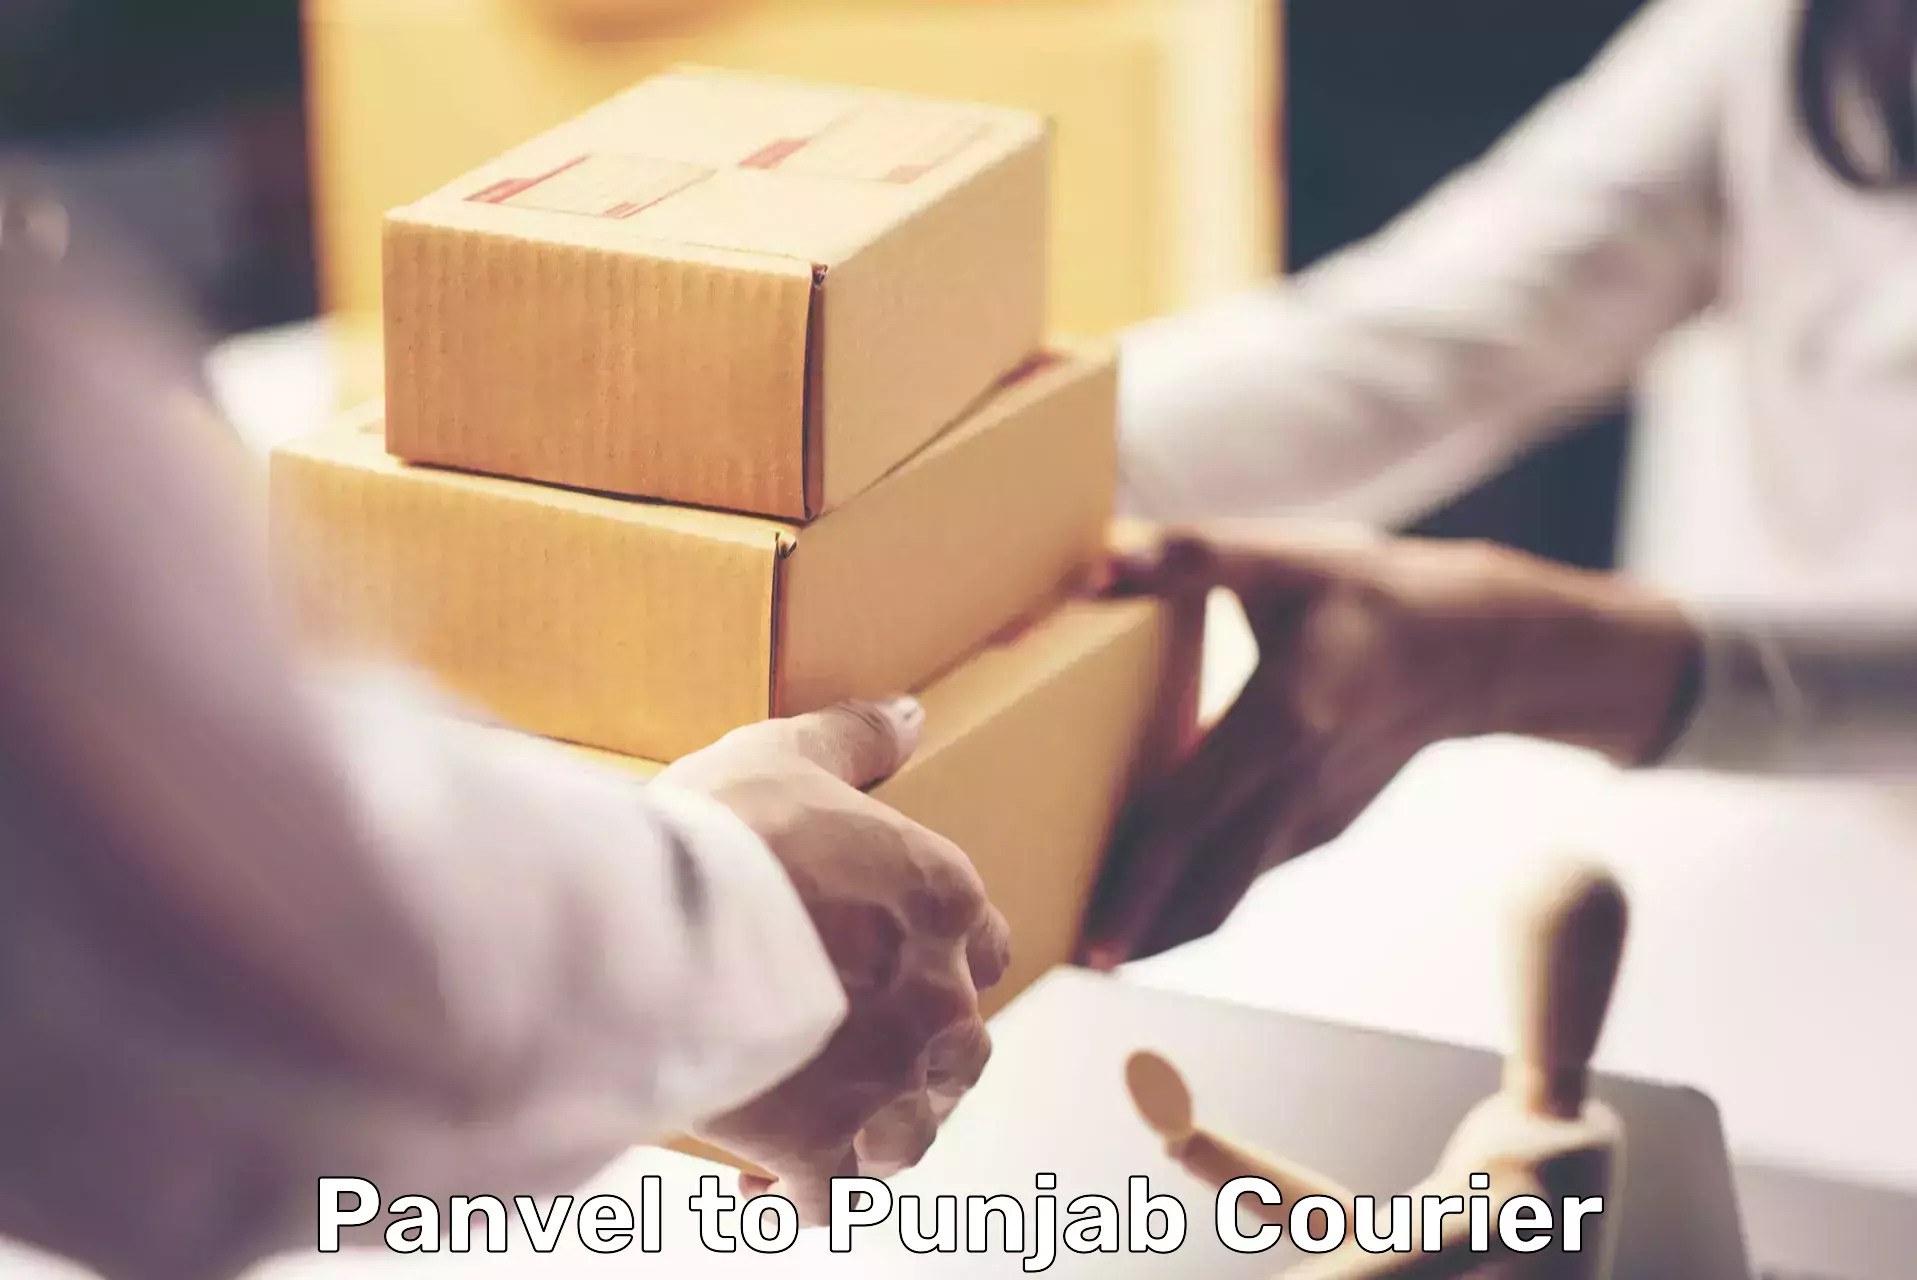 Comprehensive logistics solutions Panvel to Talwara